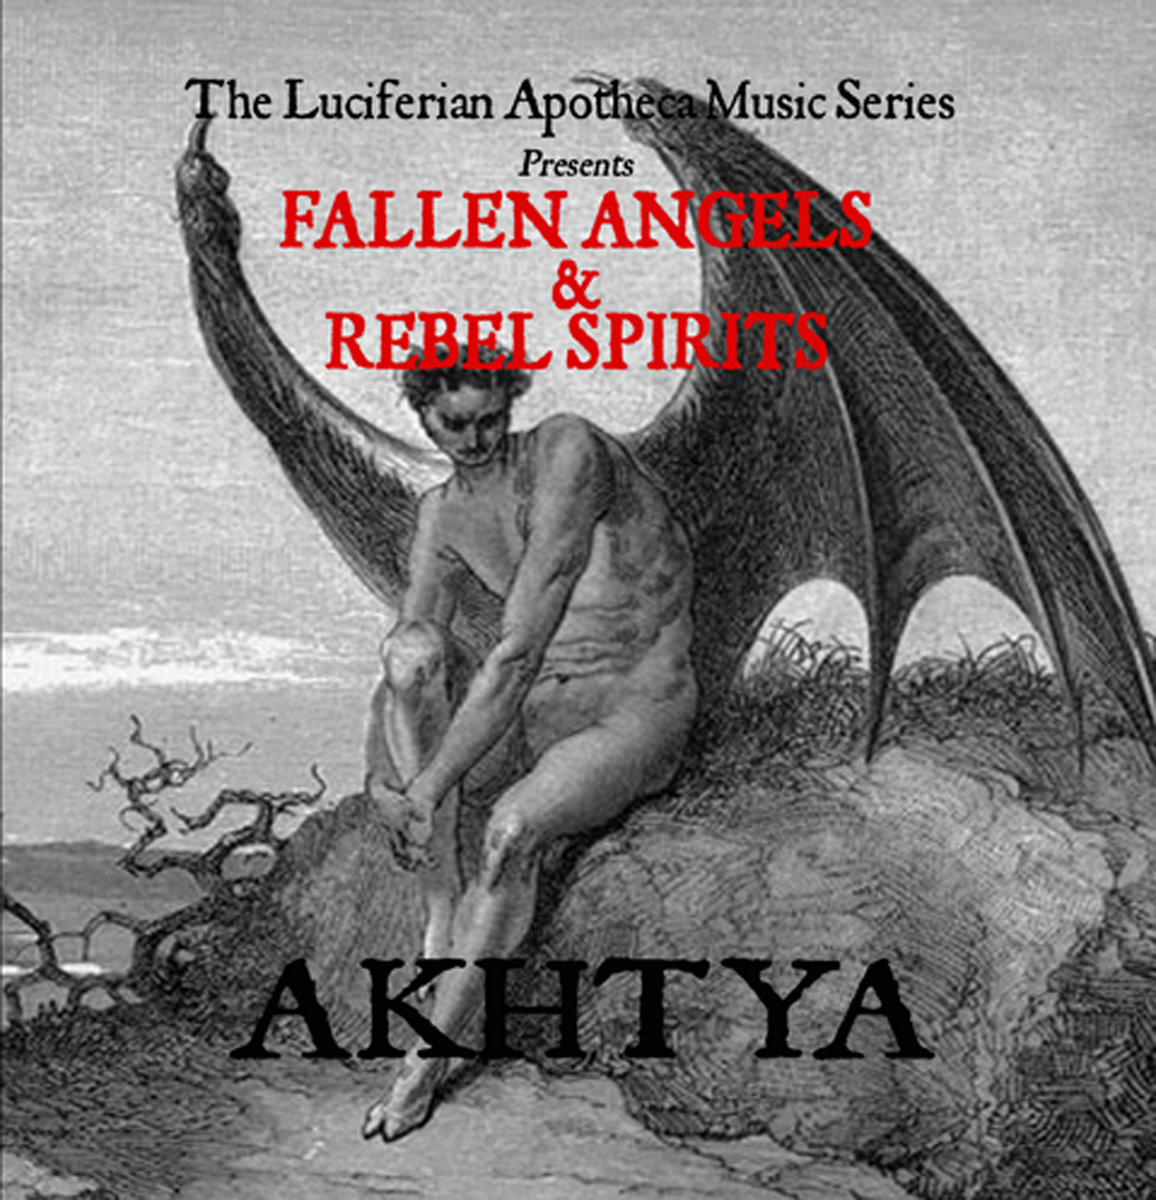 Akhtya–Fallen Angels And Rebel Spirits-16B-48k-WEB-FLAC-2013-ORDER